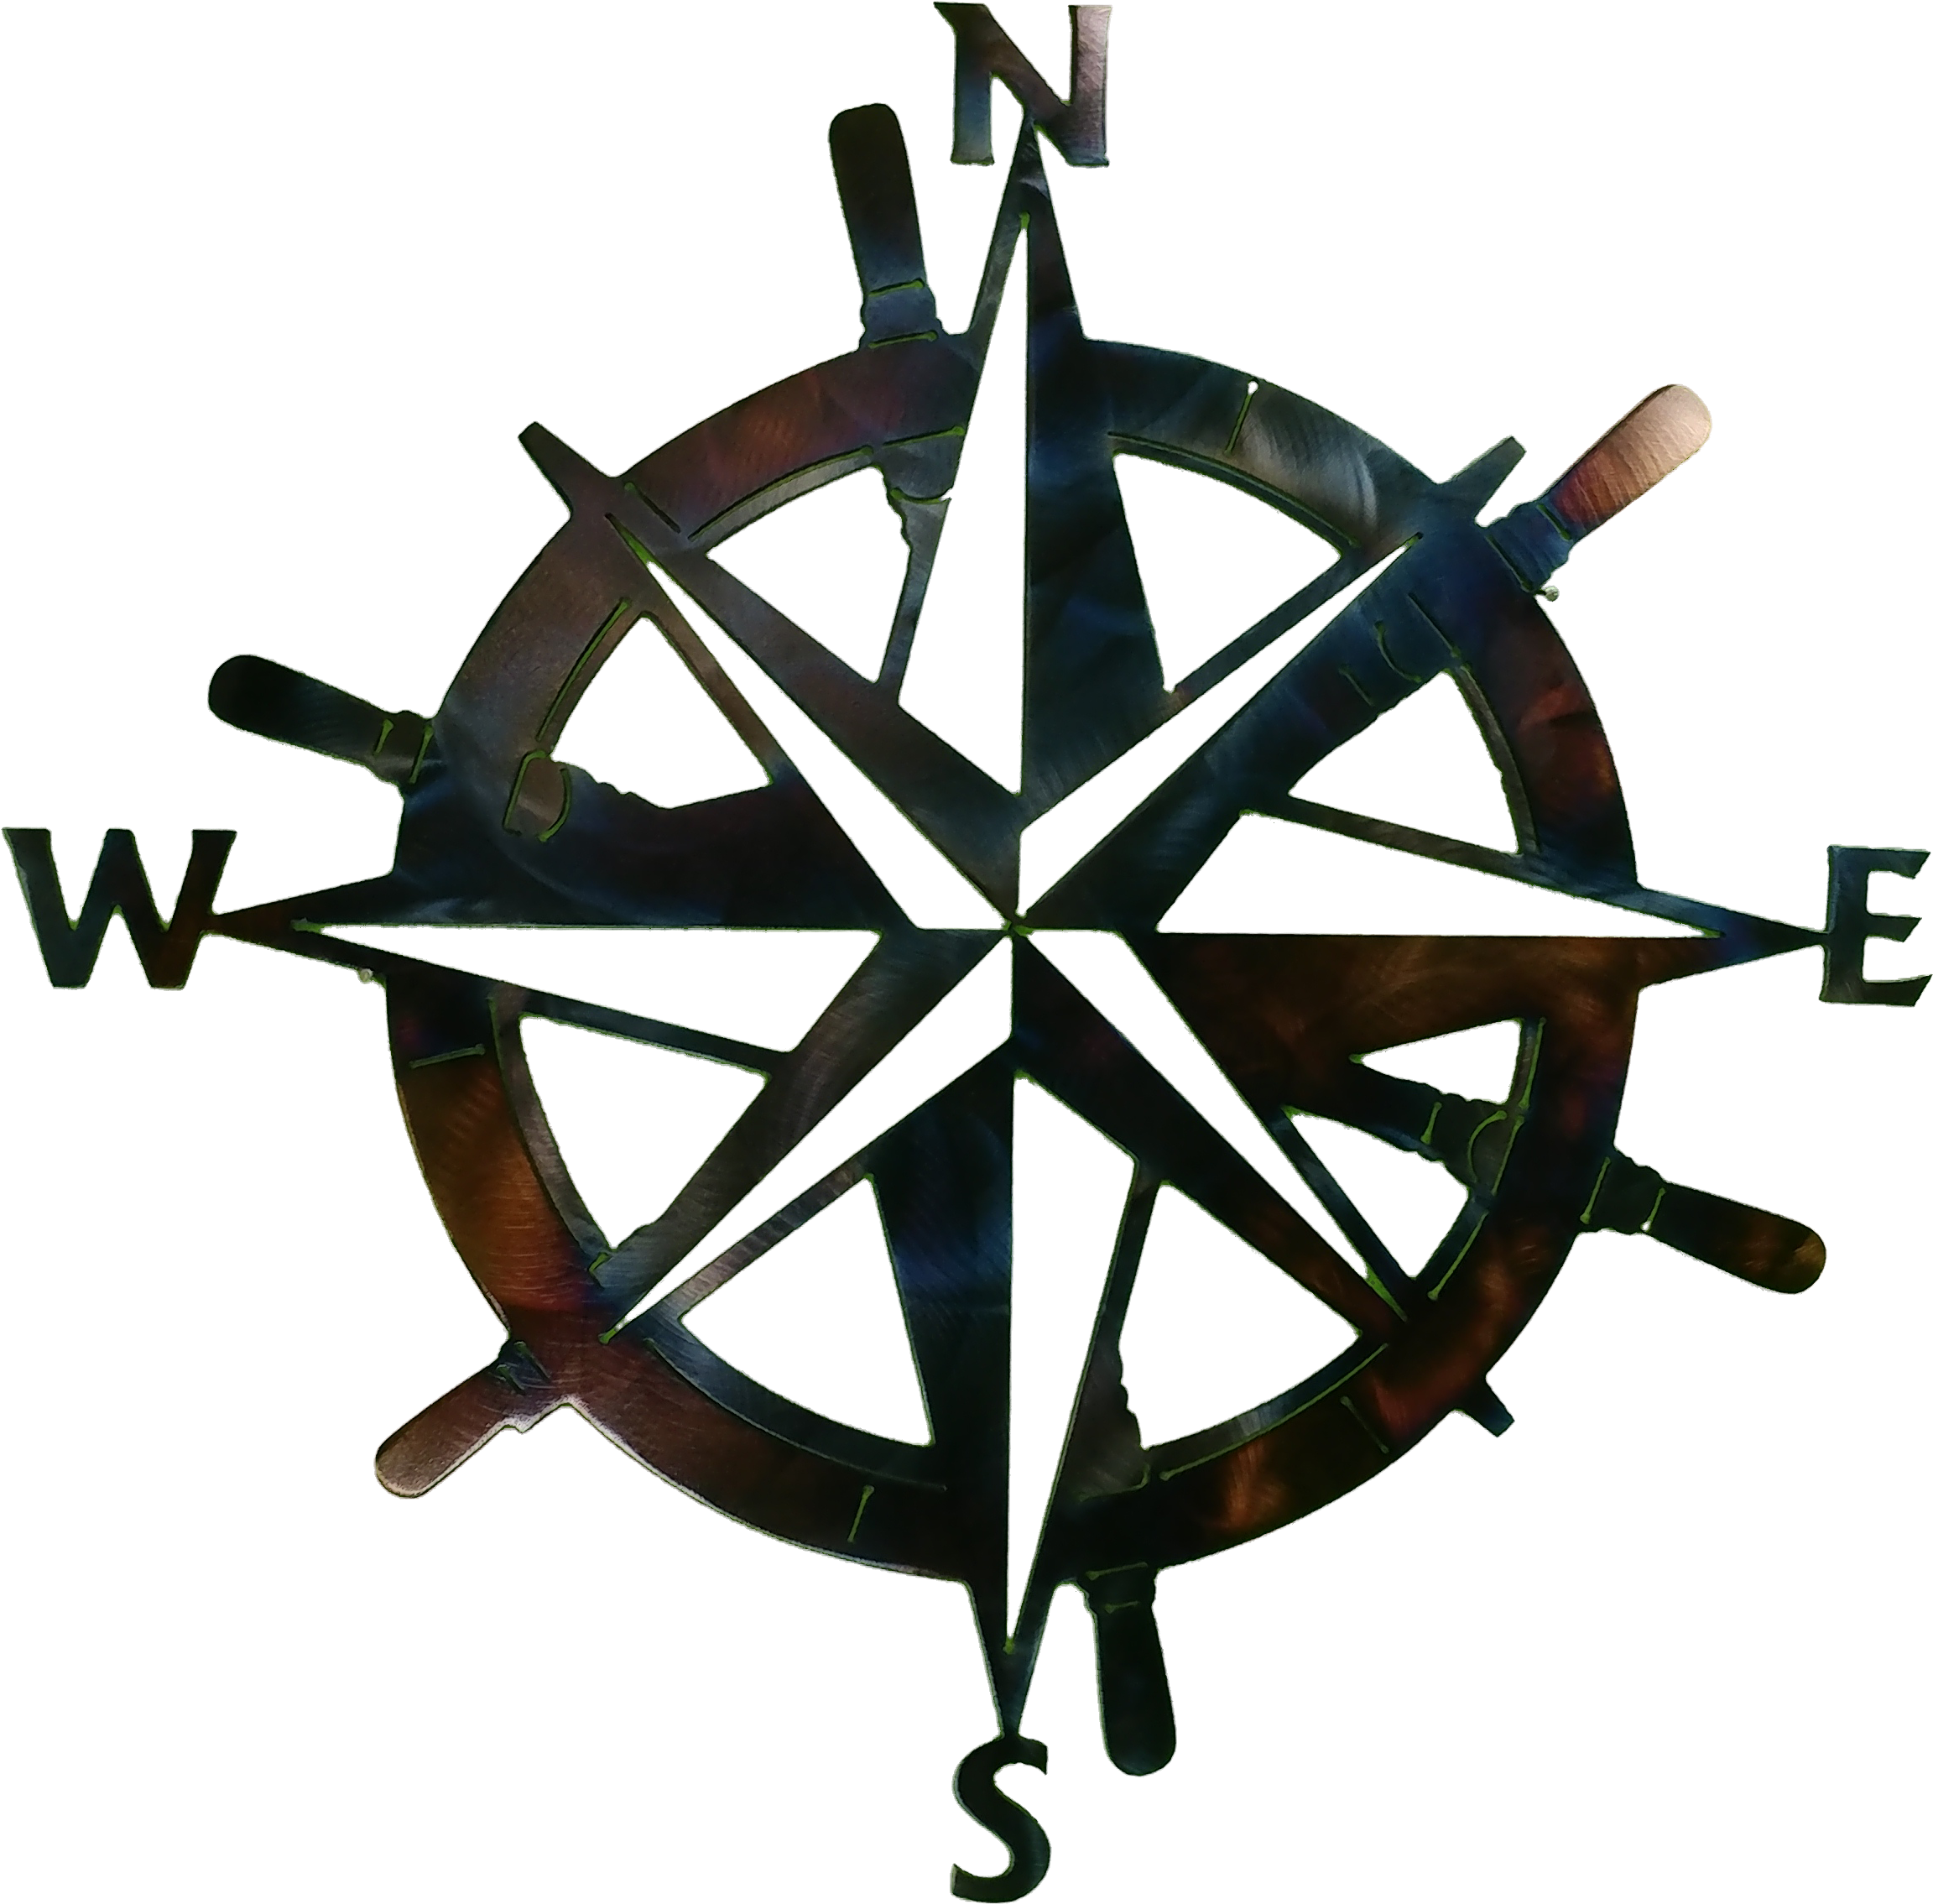 Nautical Compass Larger Image - Compass Rose (4656x2620)